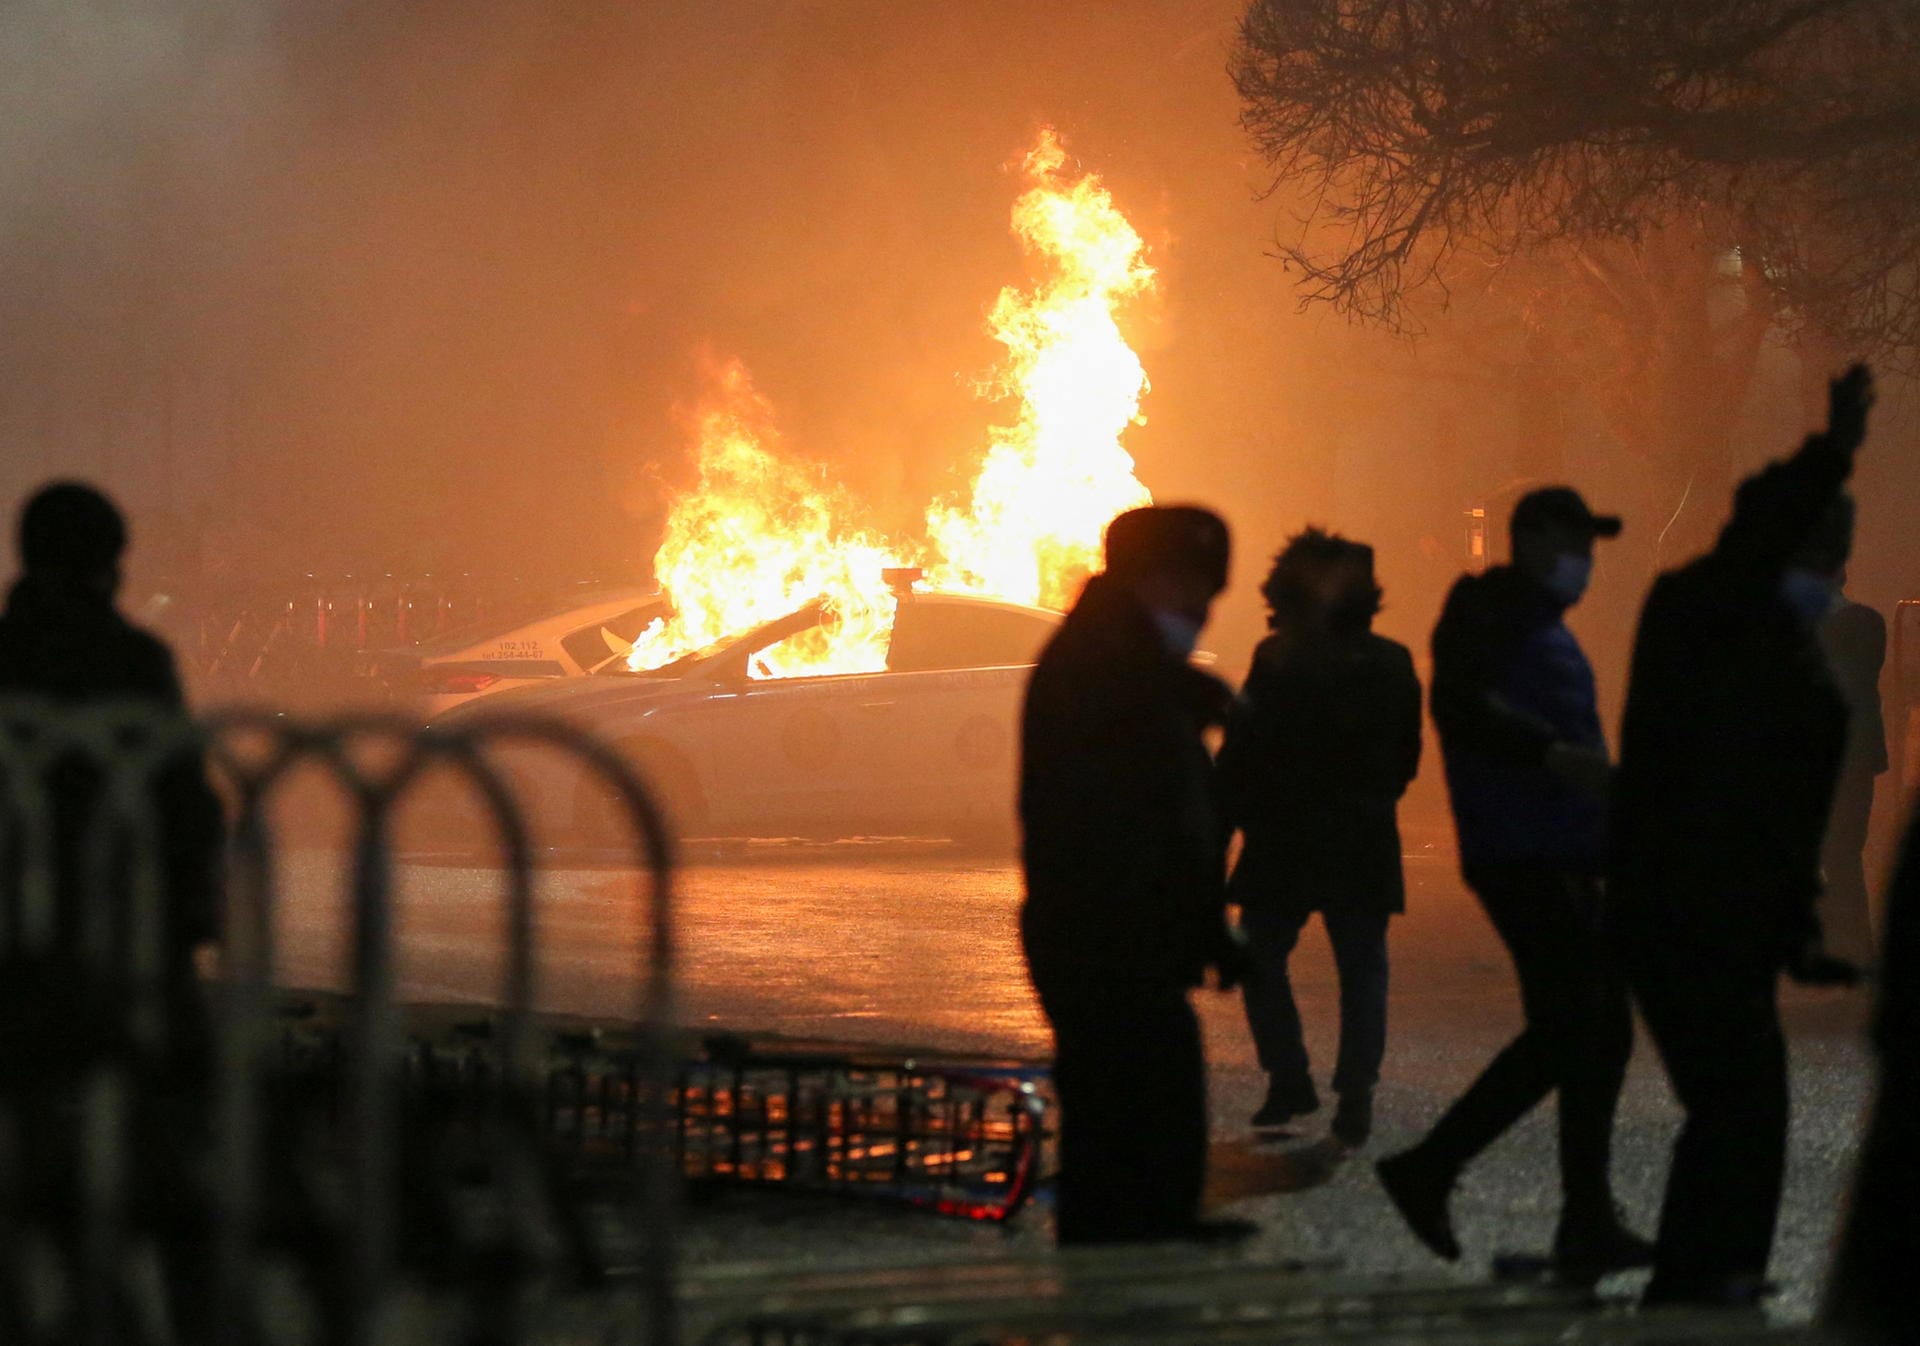 Brennendes Auto: "In der Stadt riecht es stark nach Feuer", berichtete das kasachische Medium Vlast im Nachrichtenkanal Telegram über die Proteste in Almaty.